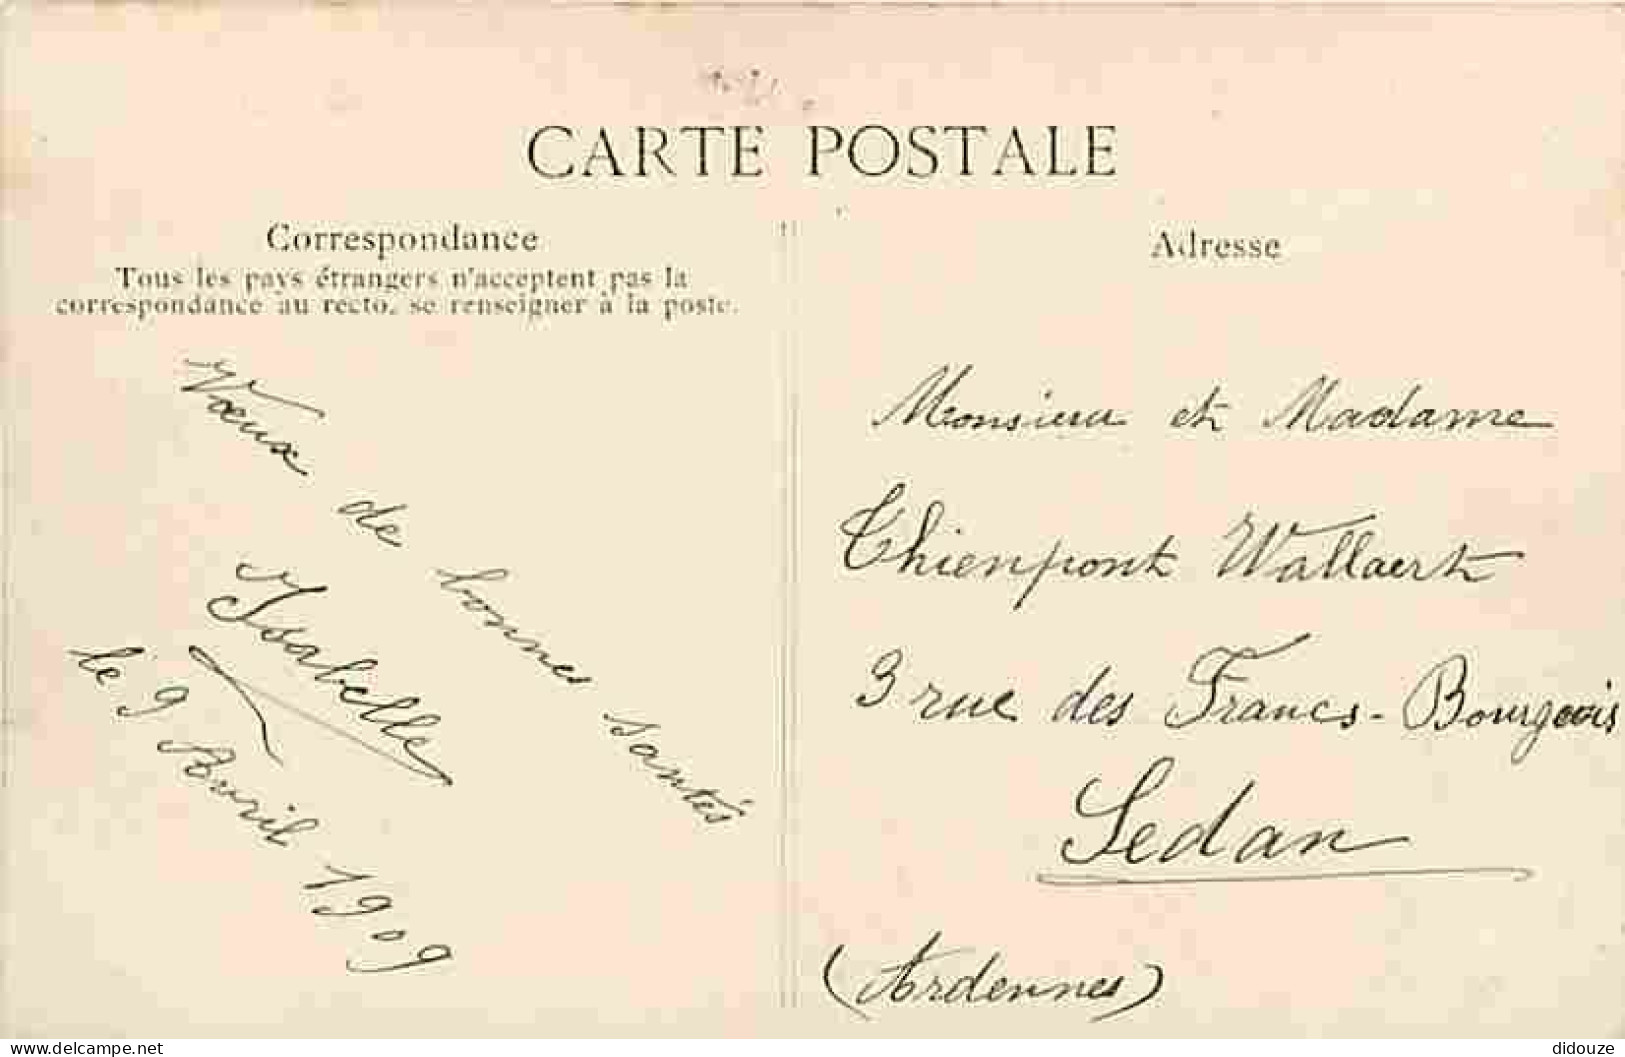 62 - Bruay - L'Eglise - Animé - Ecrite En 1909 - CPA - Voir Scans Recto-Verso - Other & Unclassified